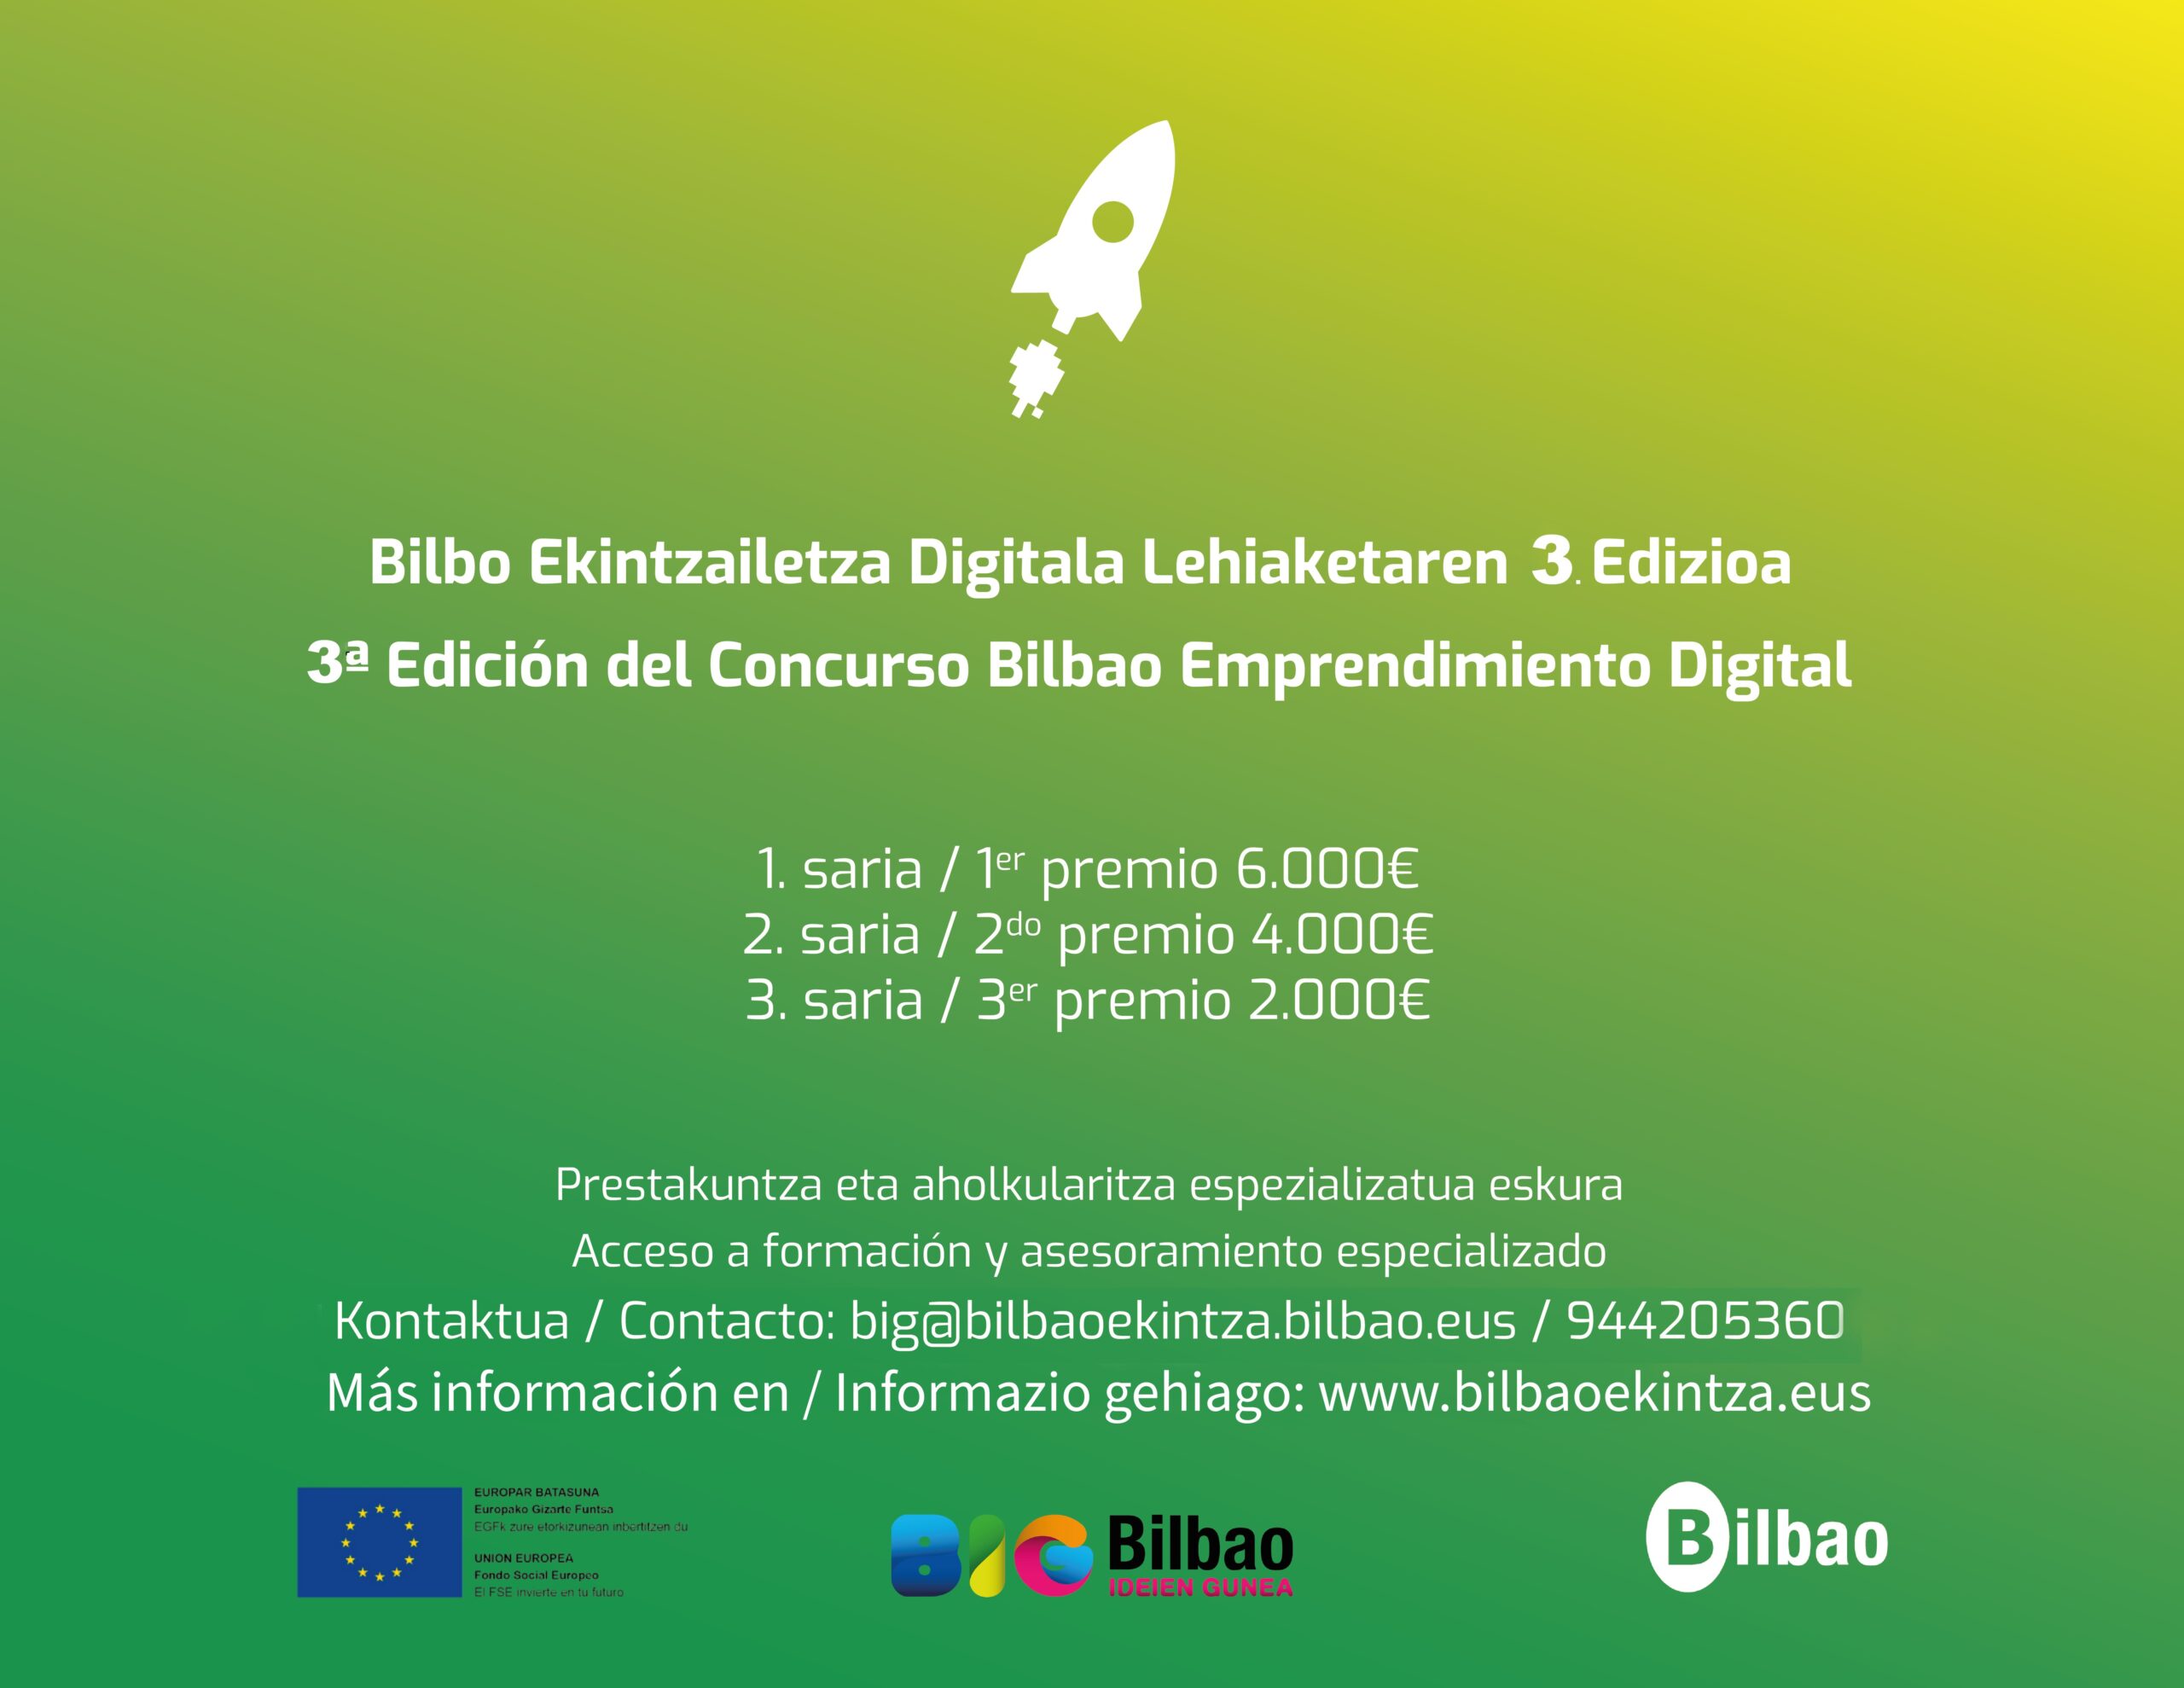 Bilbao Emprendimiento Digital Concurso